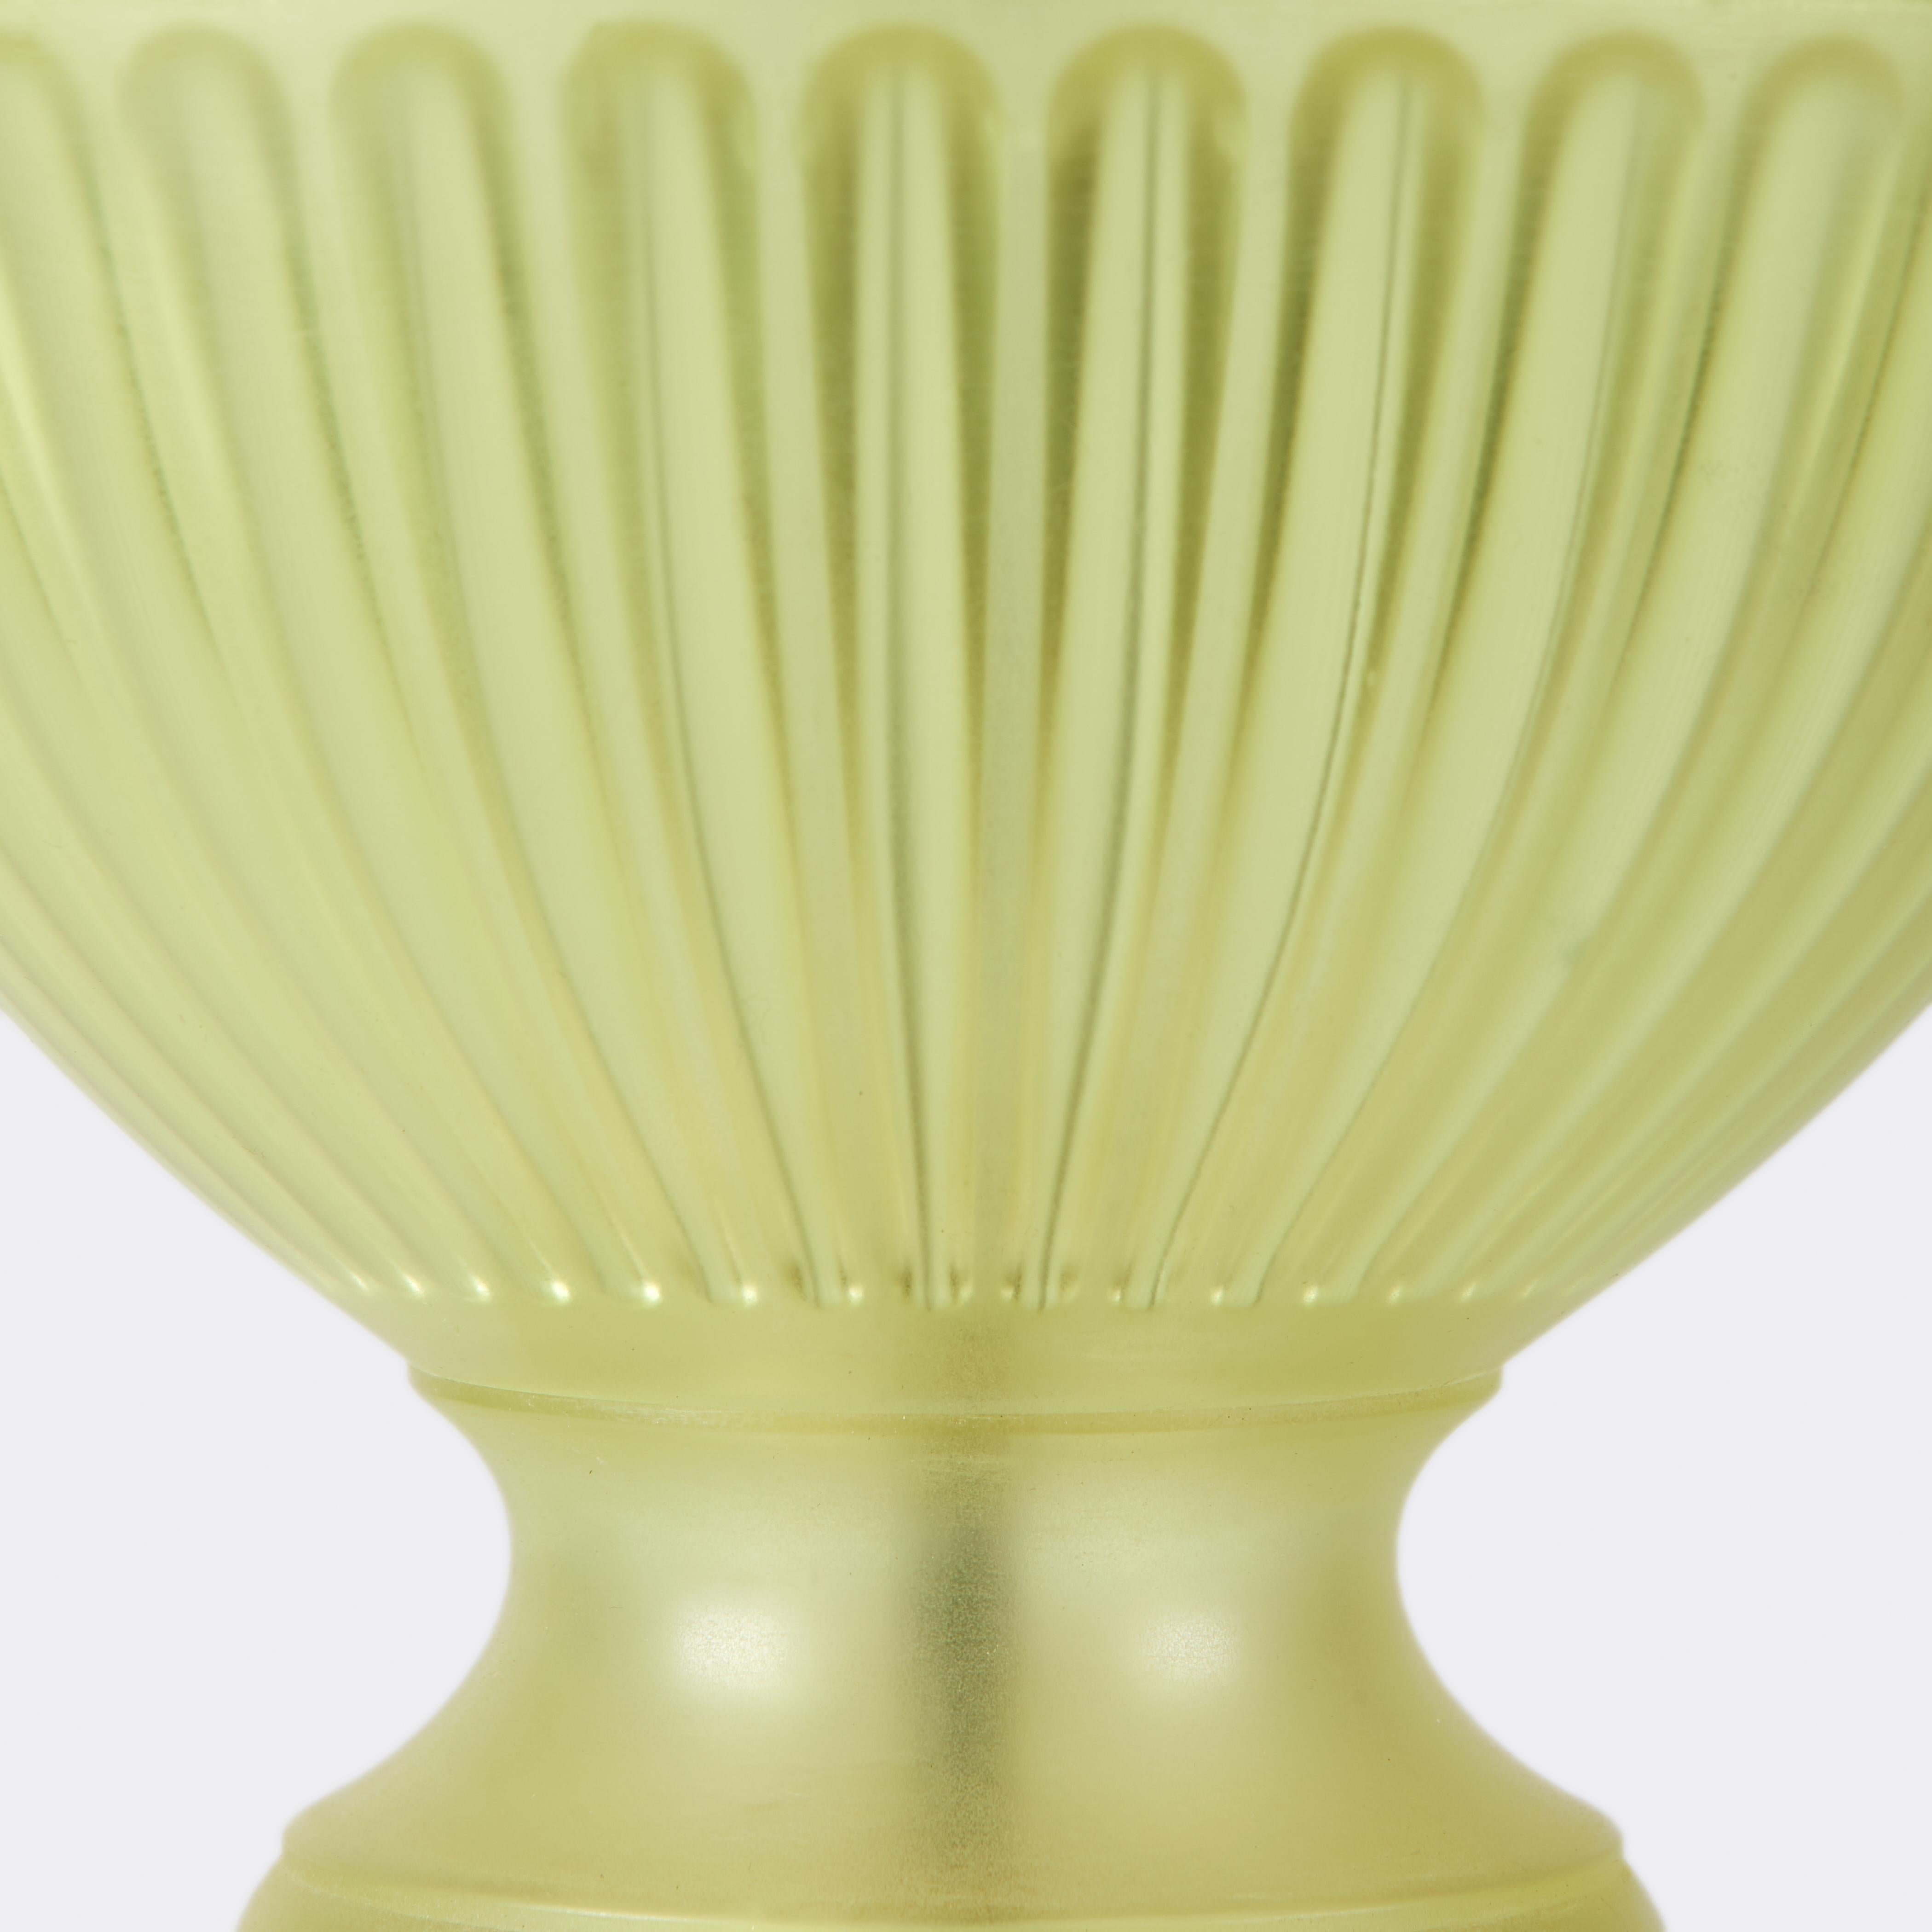 Paire de lampes en résine transparente moulée, lisses à l'extérieur, avec un motif rainuré à l'intérieur, inspiré d'un vase assyrien. Chaque lampe a des détails en laiton et deux douilles. Les abat-jour ne sont pas inclus.